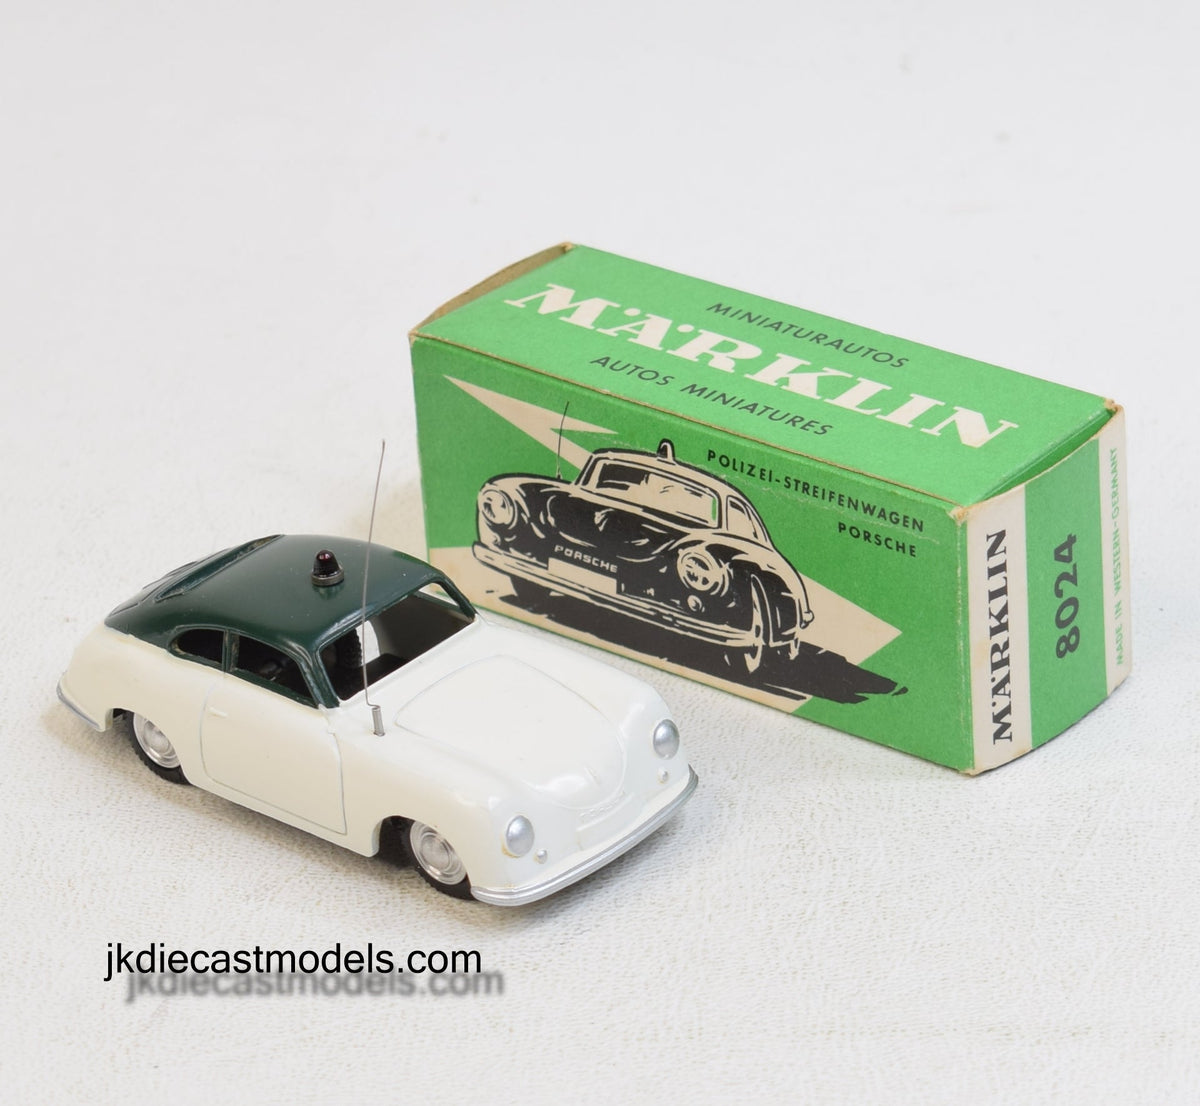 Marklin 8024 Polizei Porsche Virtually Mint/Boxed (Light cream)